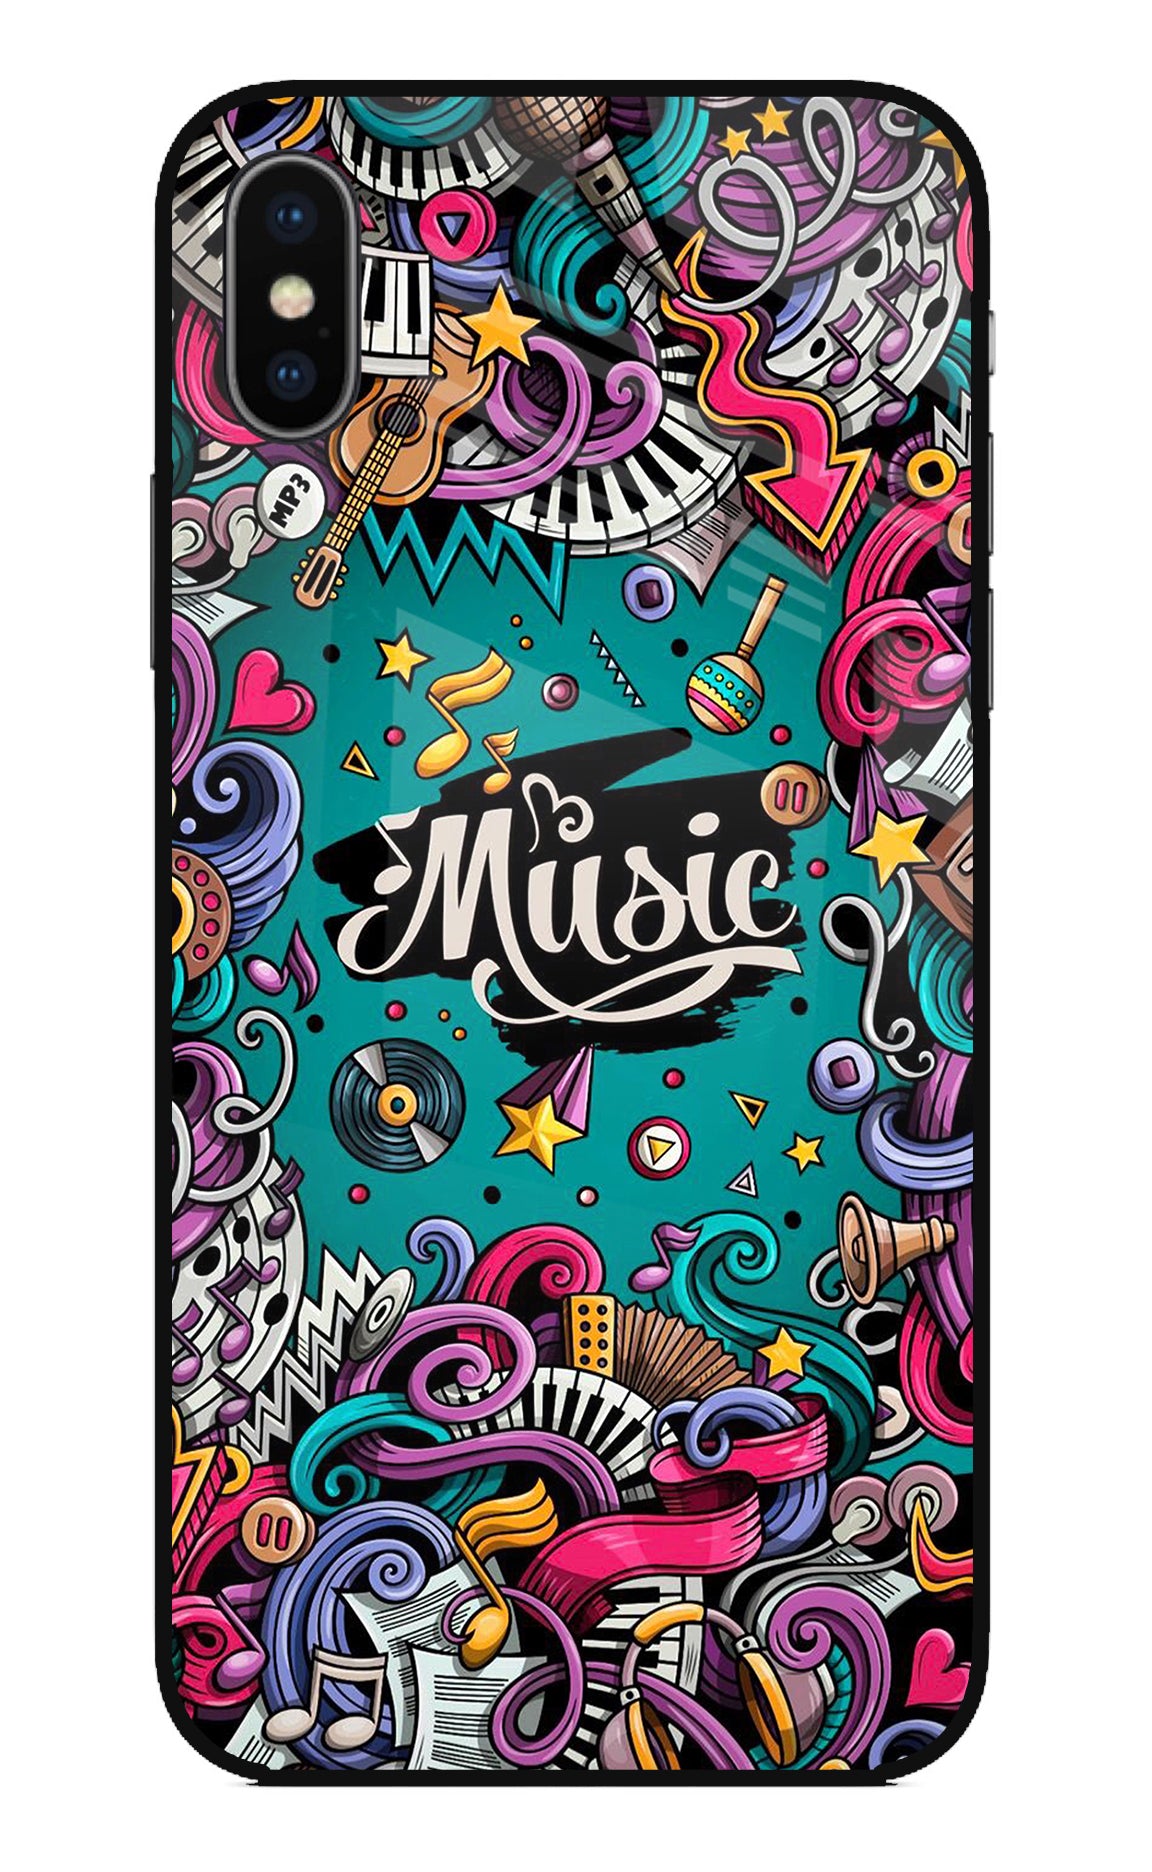 Music Graffiti iPhone X Back Cover